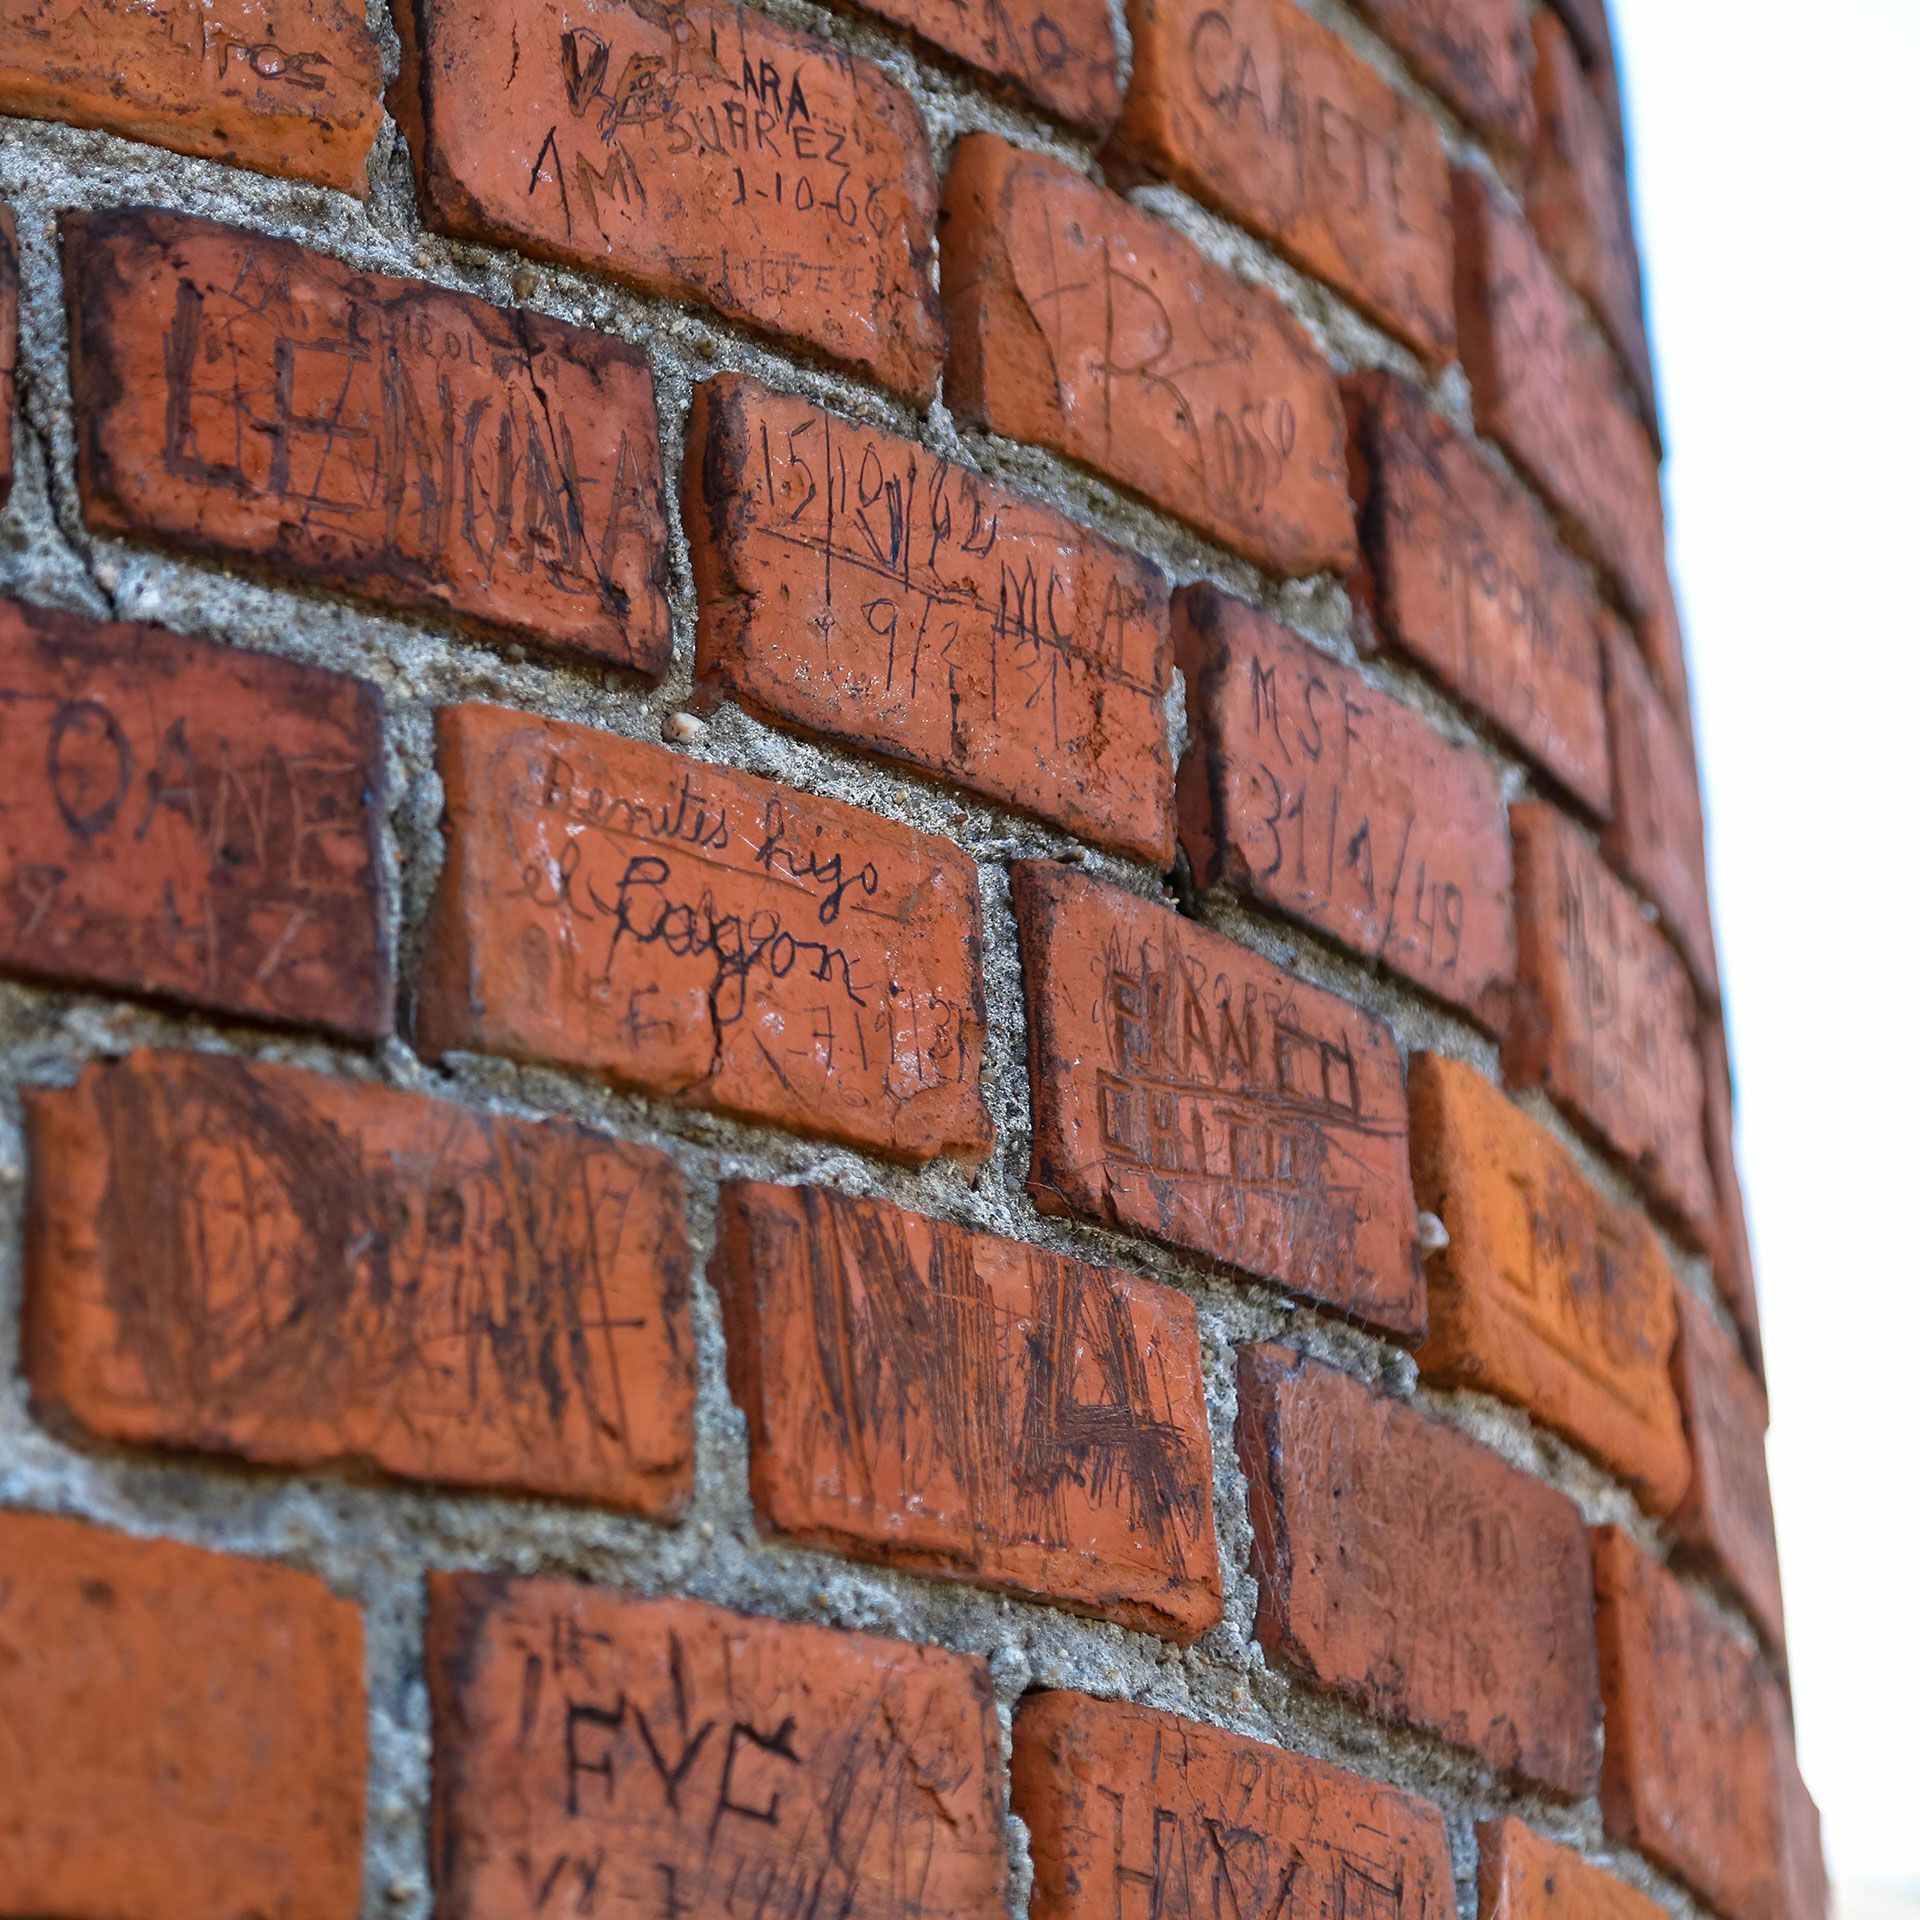 Nombres, fechas y mensajes de los presos en lo alto de la vieja chimenea de barro del penal 